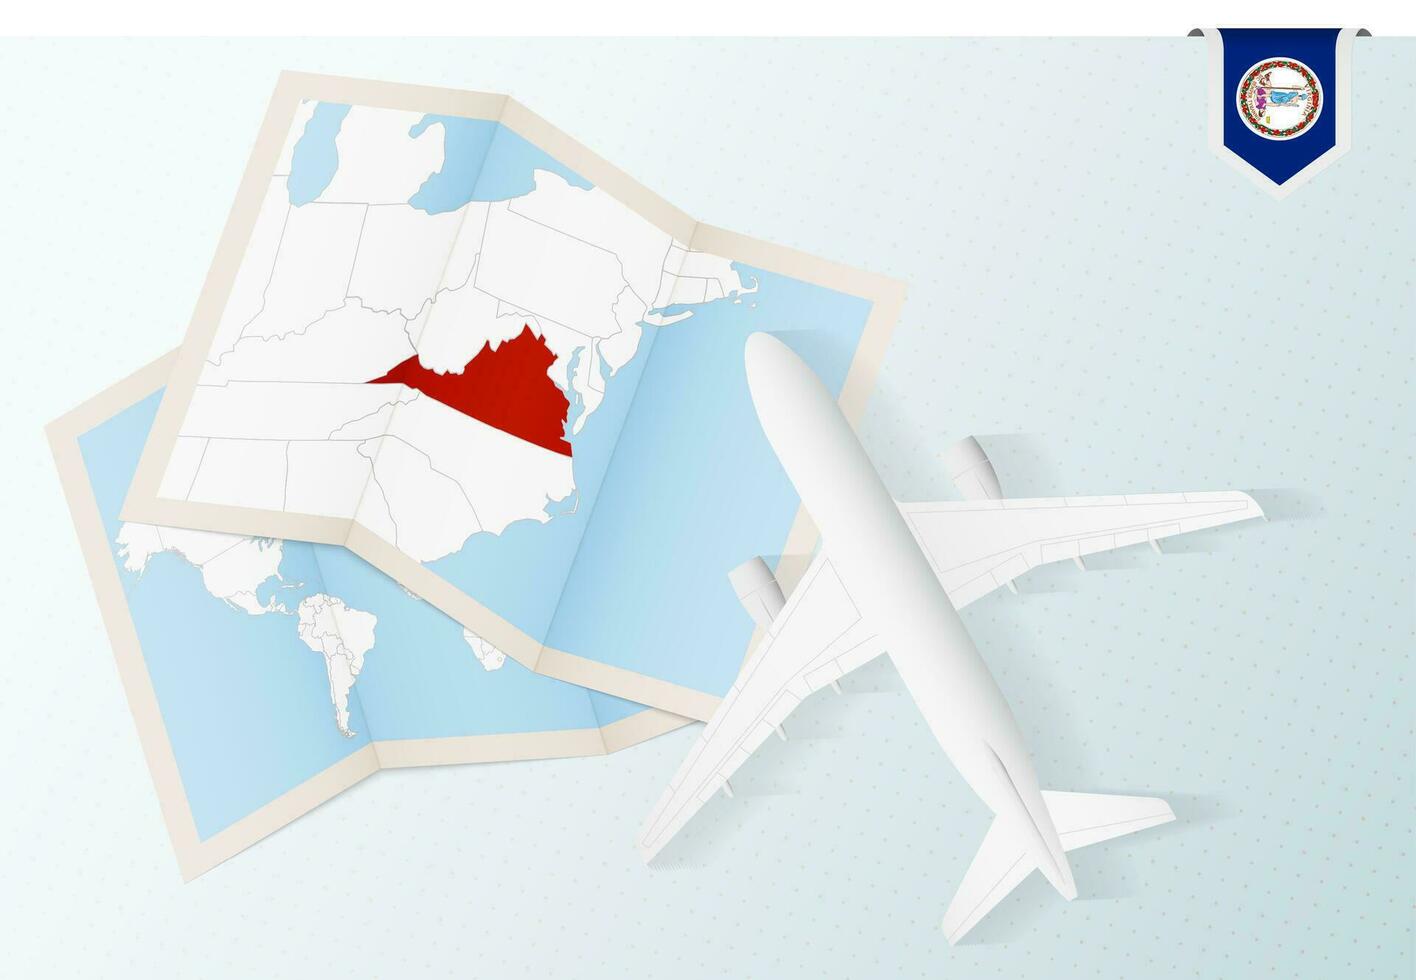 Voyage à Virginie, Haut vue avion avec carte et drapeau de Virginie. vecteur